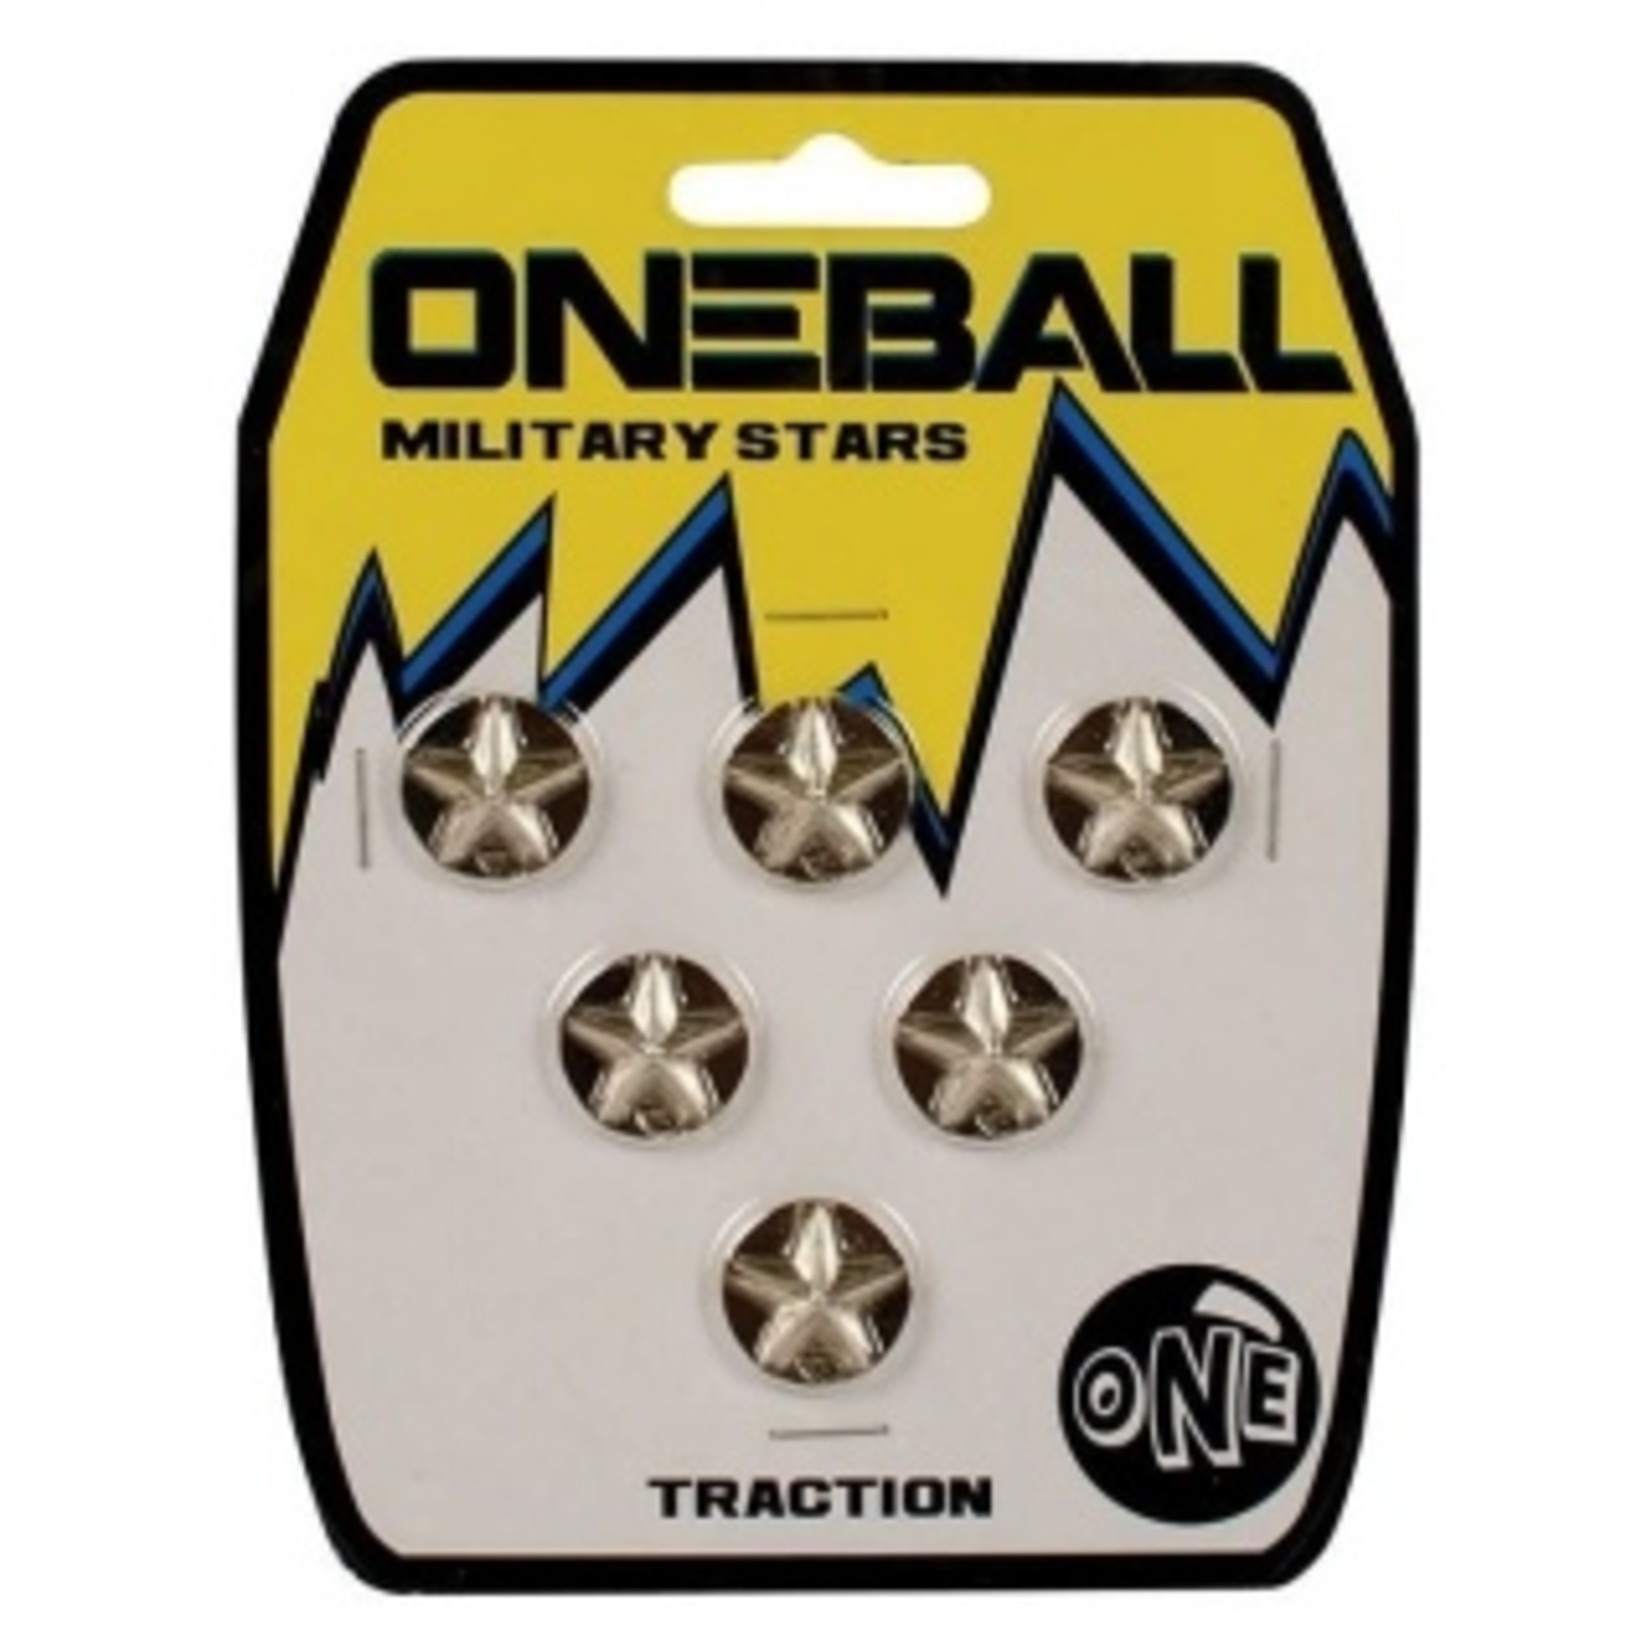 OneBall One Ball Military Stars Stomp Pad